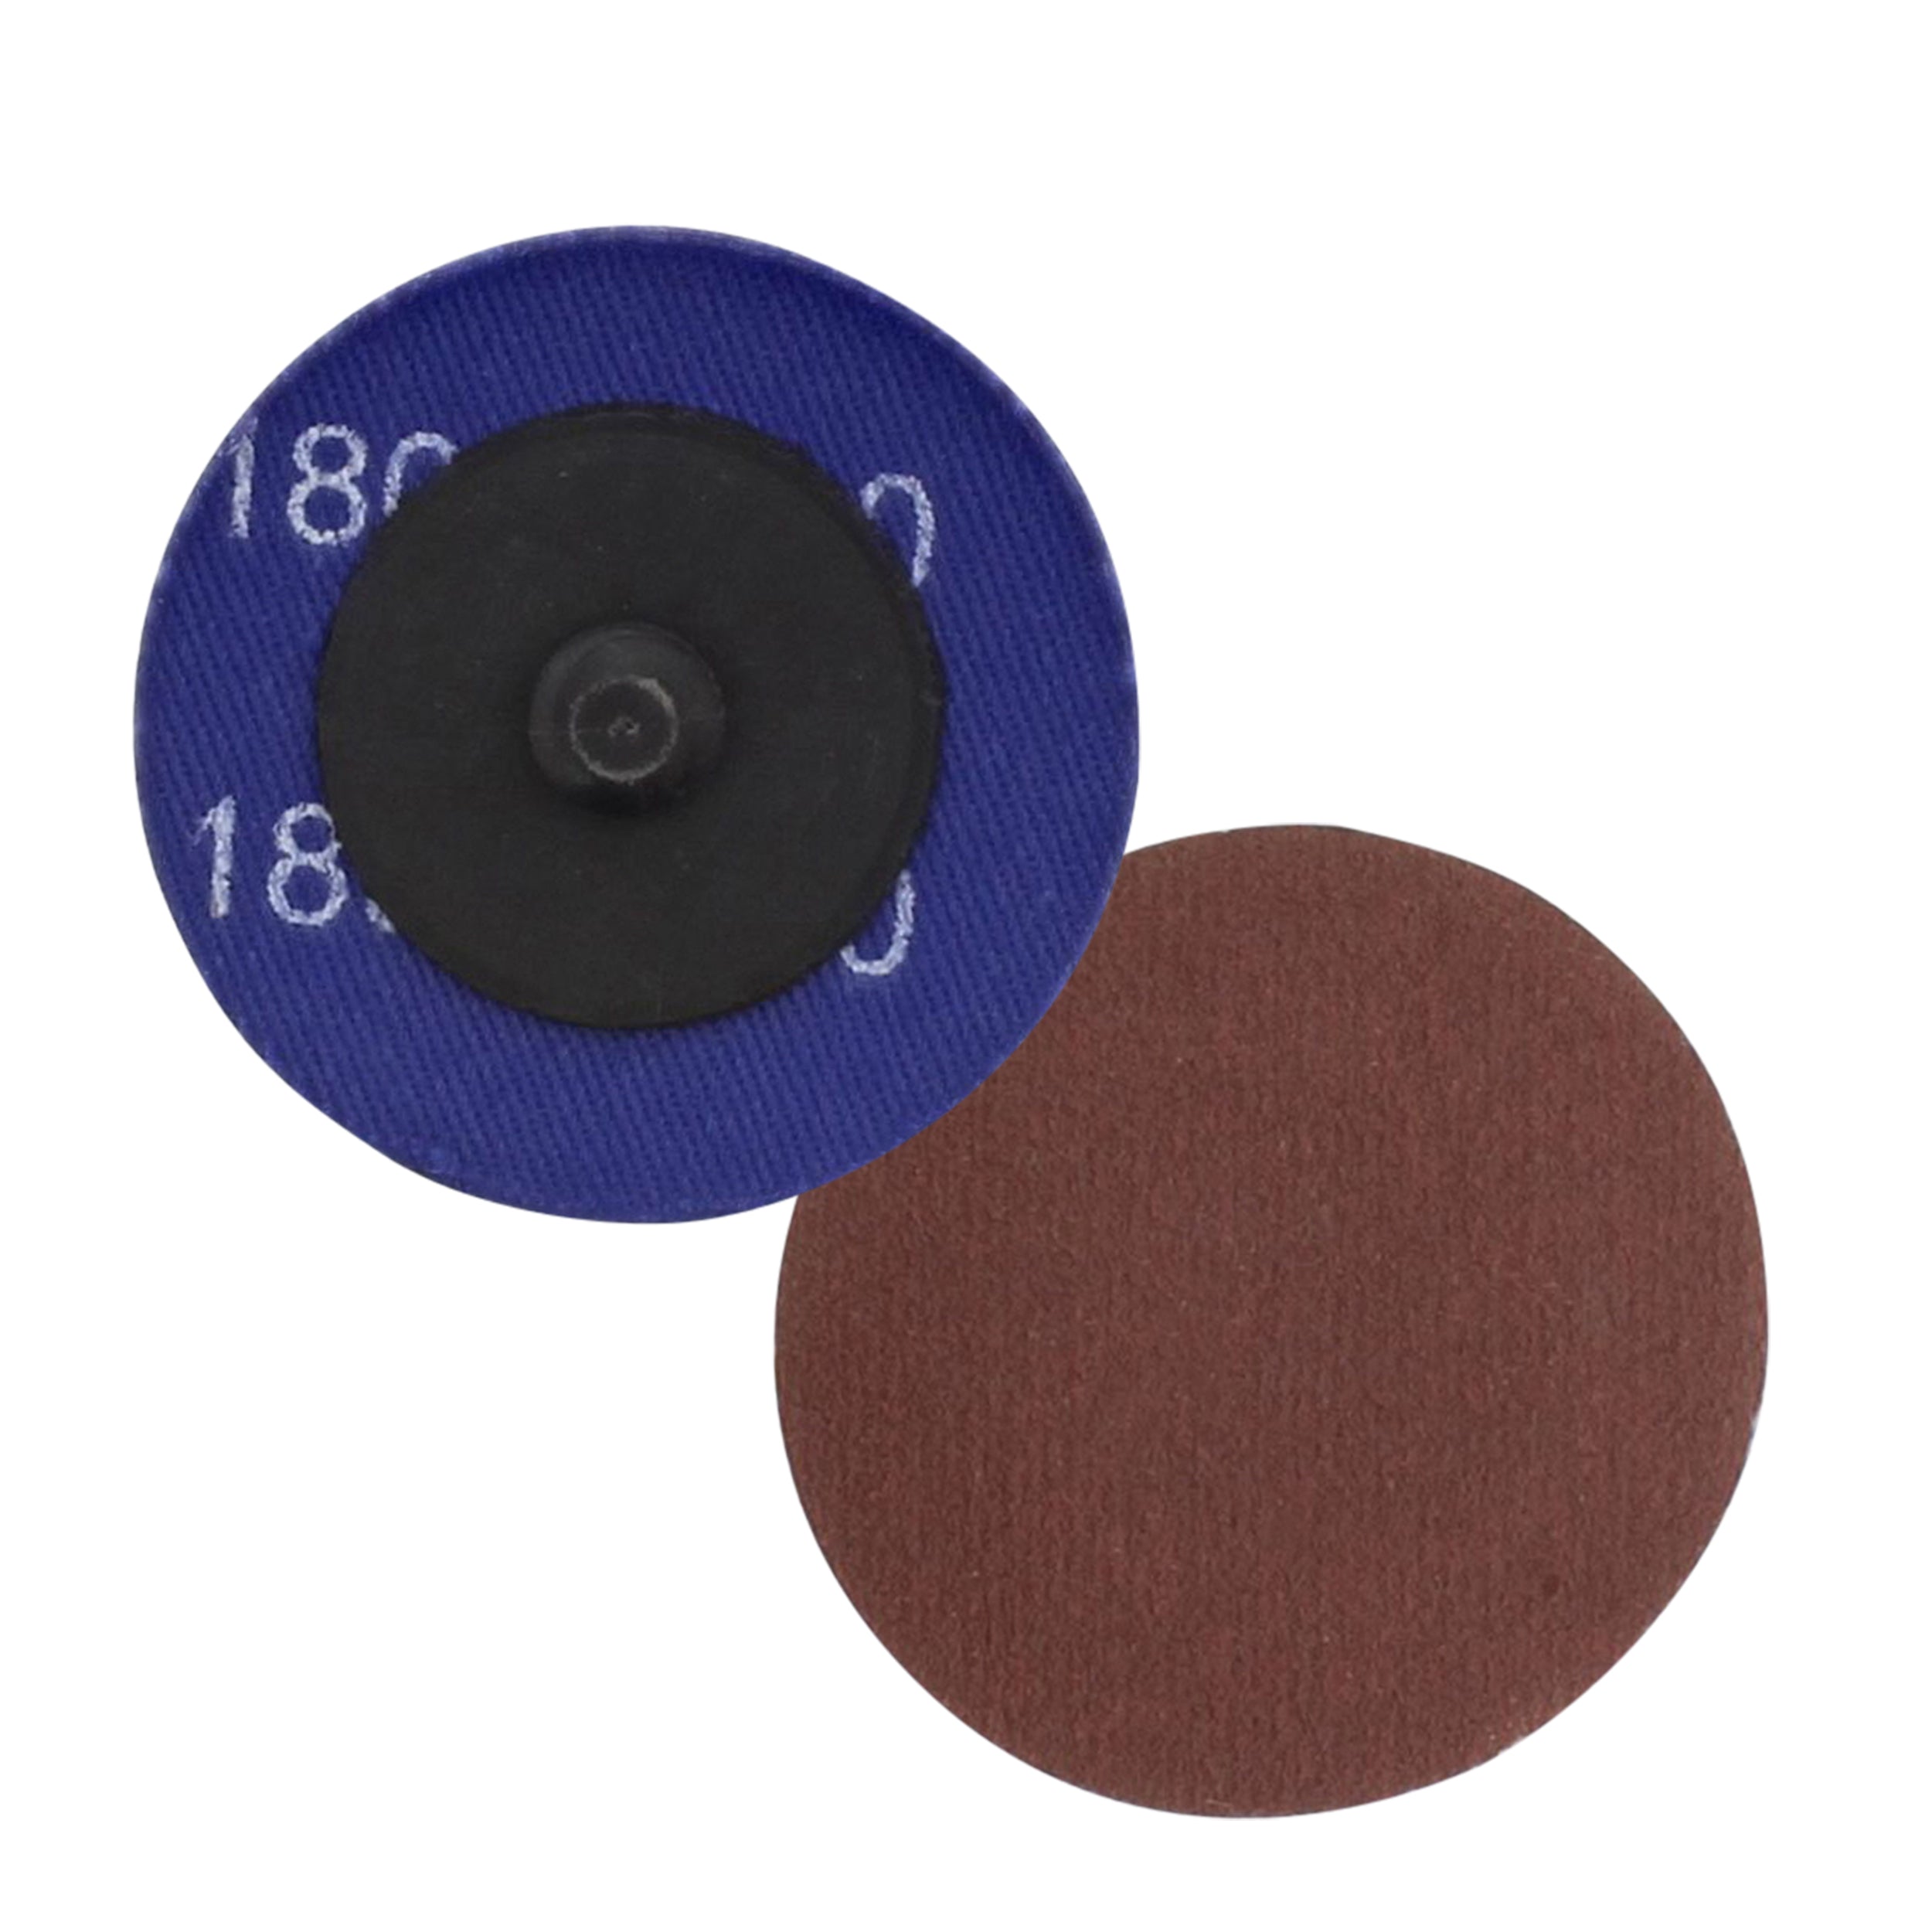 Aluminum Oxide Sandpaper Disc 50pk - 2in 180 Grit Sanding Disc Set